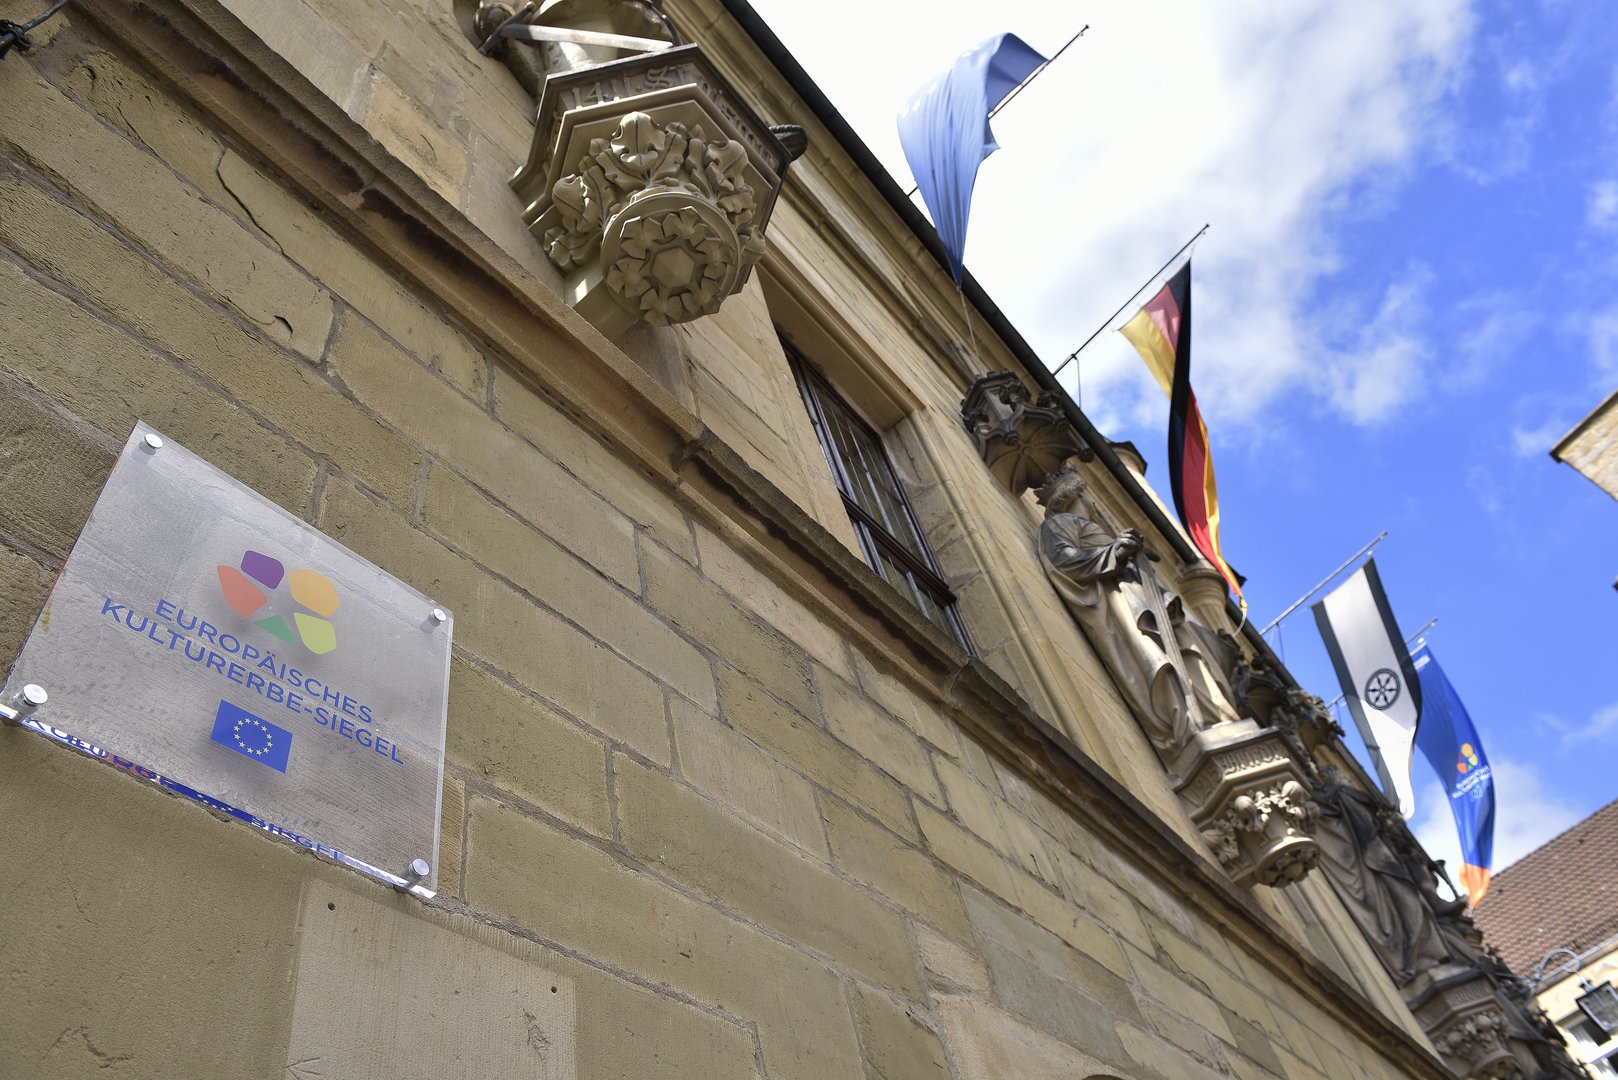 Europäisches Kulturerbe-Siegel am Rathaus Osnabrück.